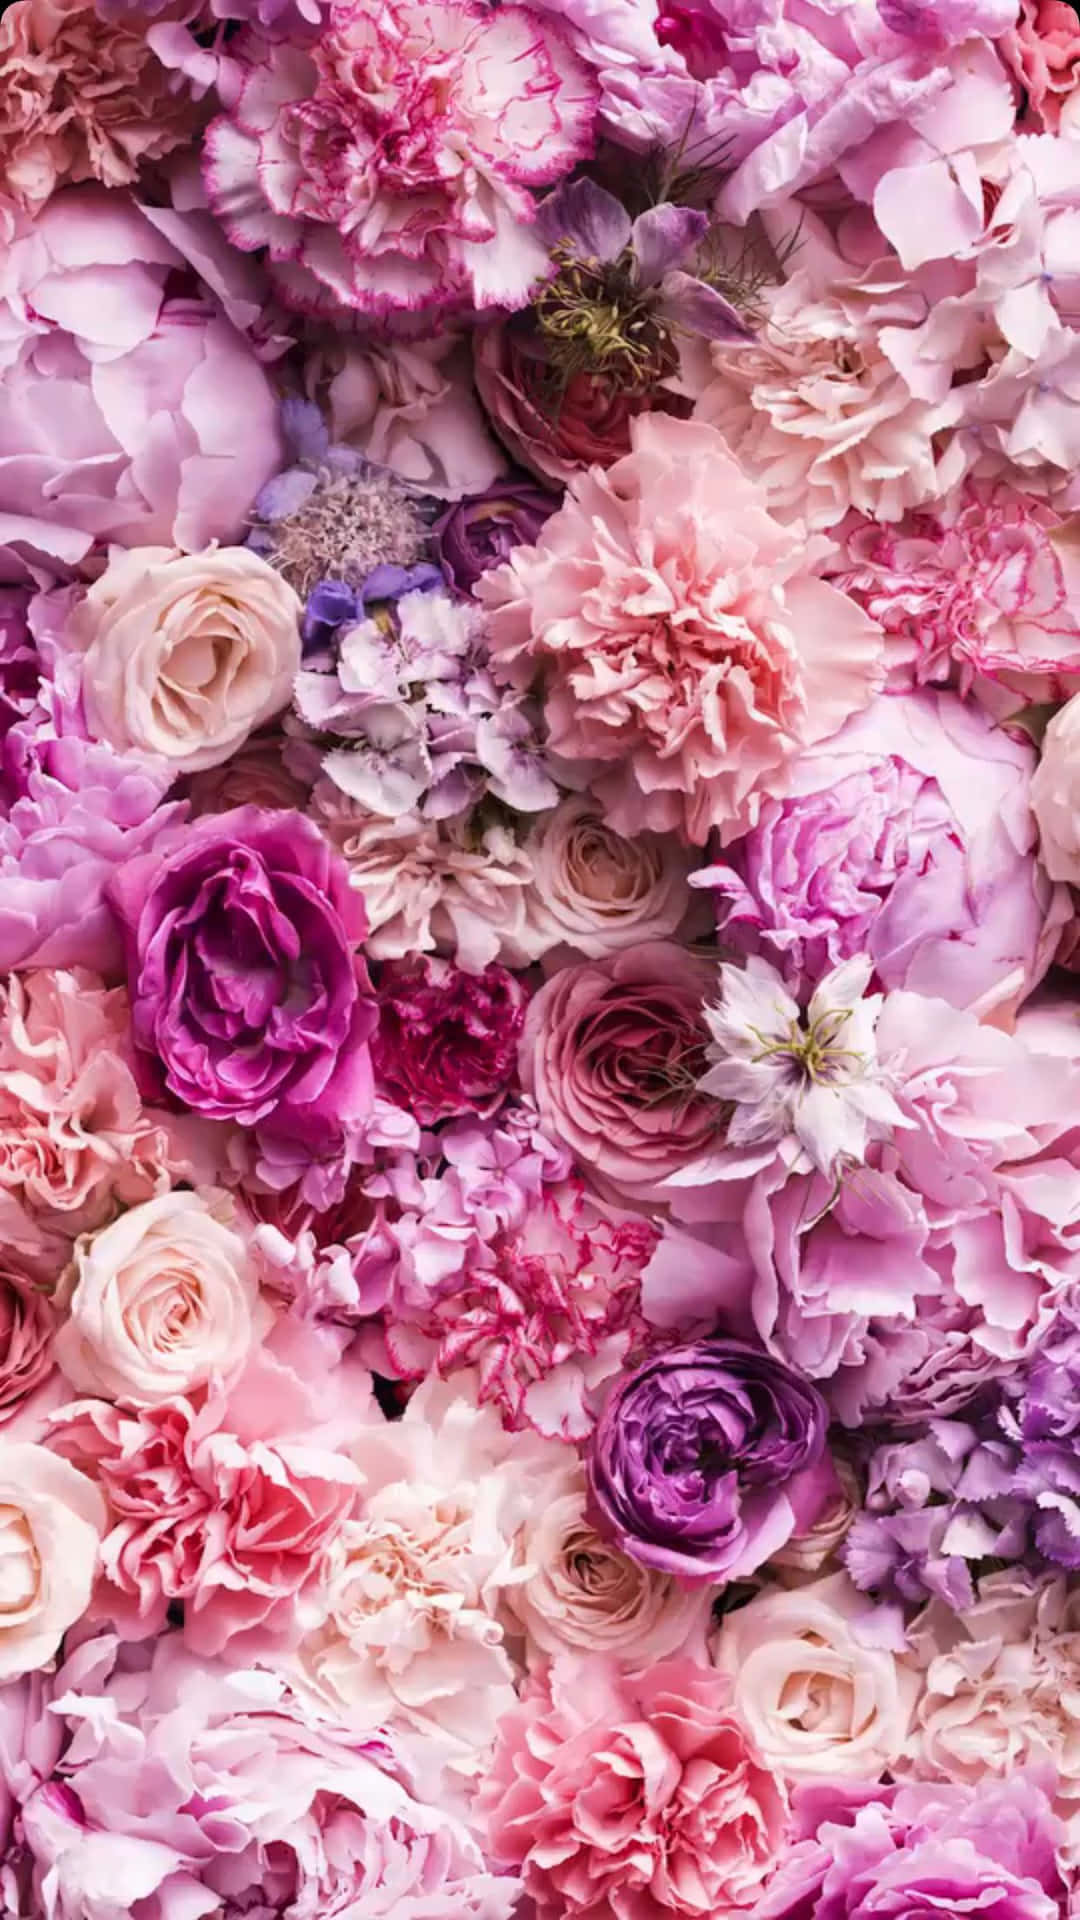 Chỉ cần nhìn vào từng cánh hoa trên hình nền Floral iPhone Wallpaper, bạn sẽ cảm nhận sự tươi mới và sống động trong từng điện thoại của mình. Hãy để tâm trí bạn thư giãn và thưởng thức vẻ đẹp hoa lá trên màn hình điện thoại nhé.